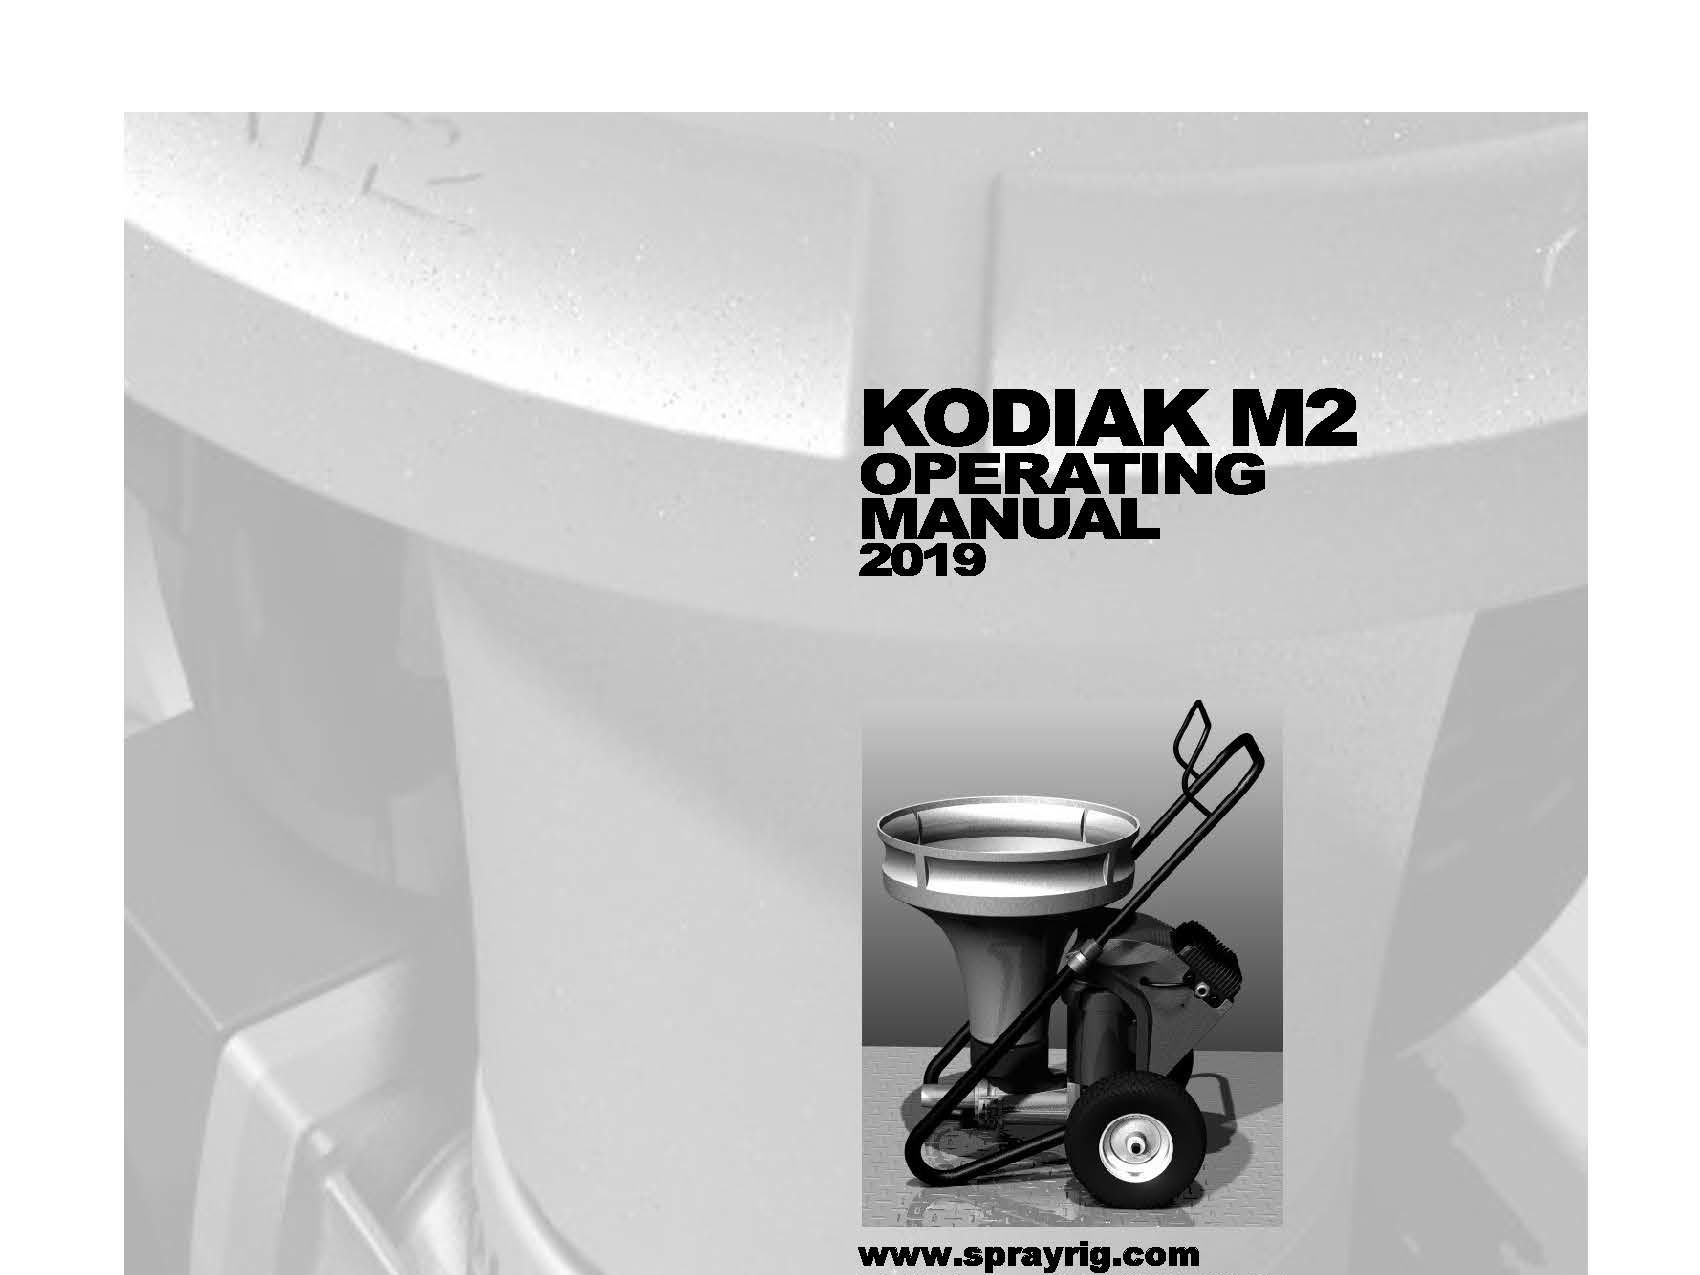 Kodiak M2 Operating Manual